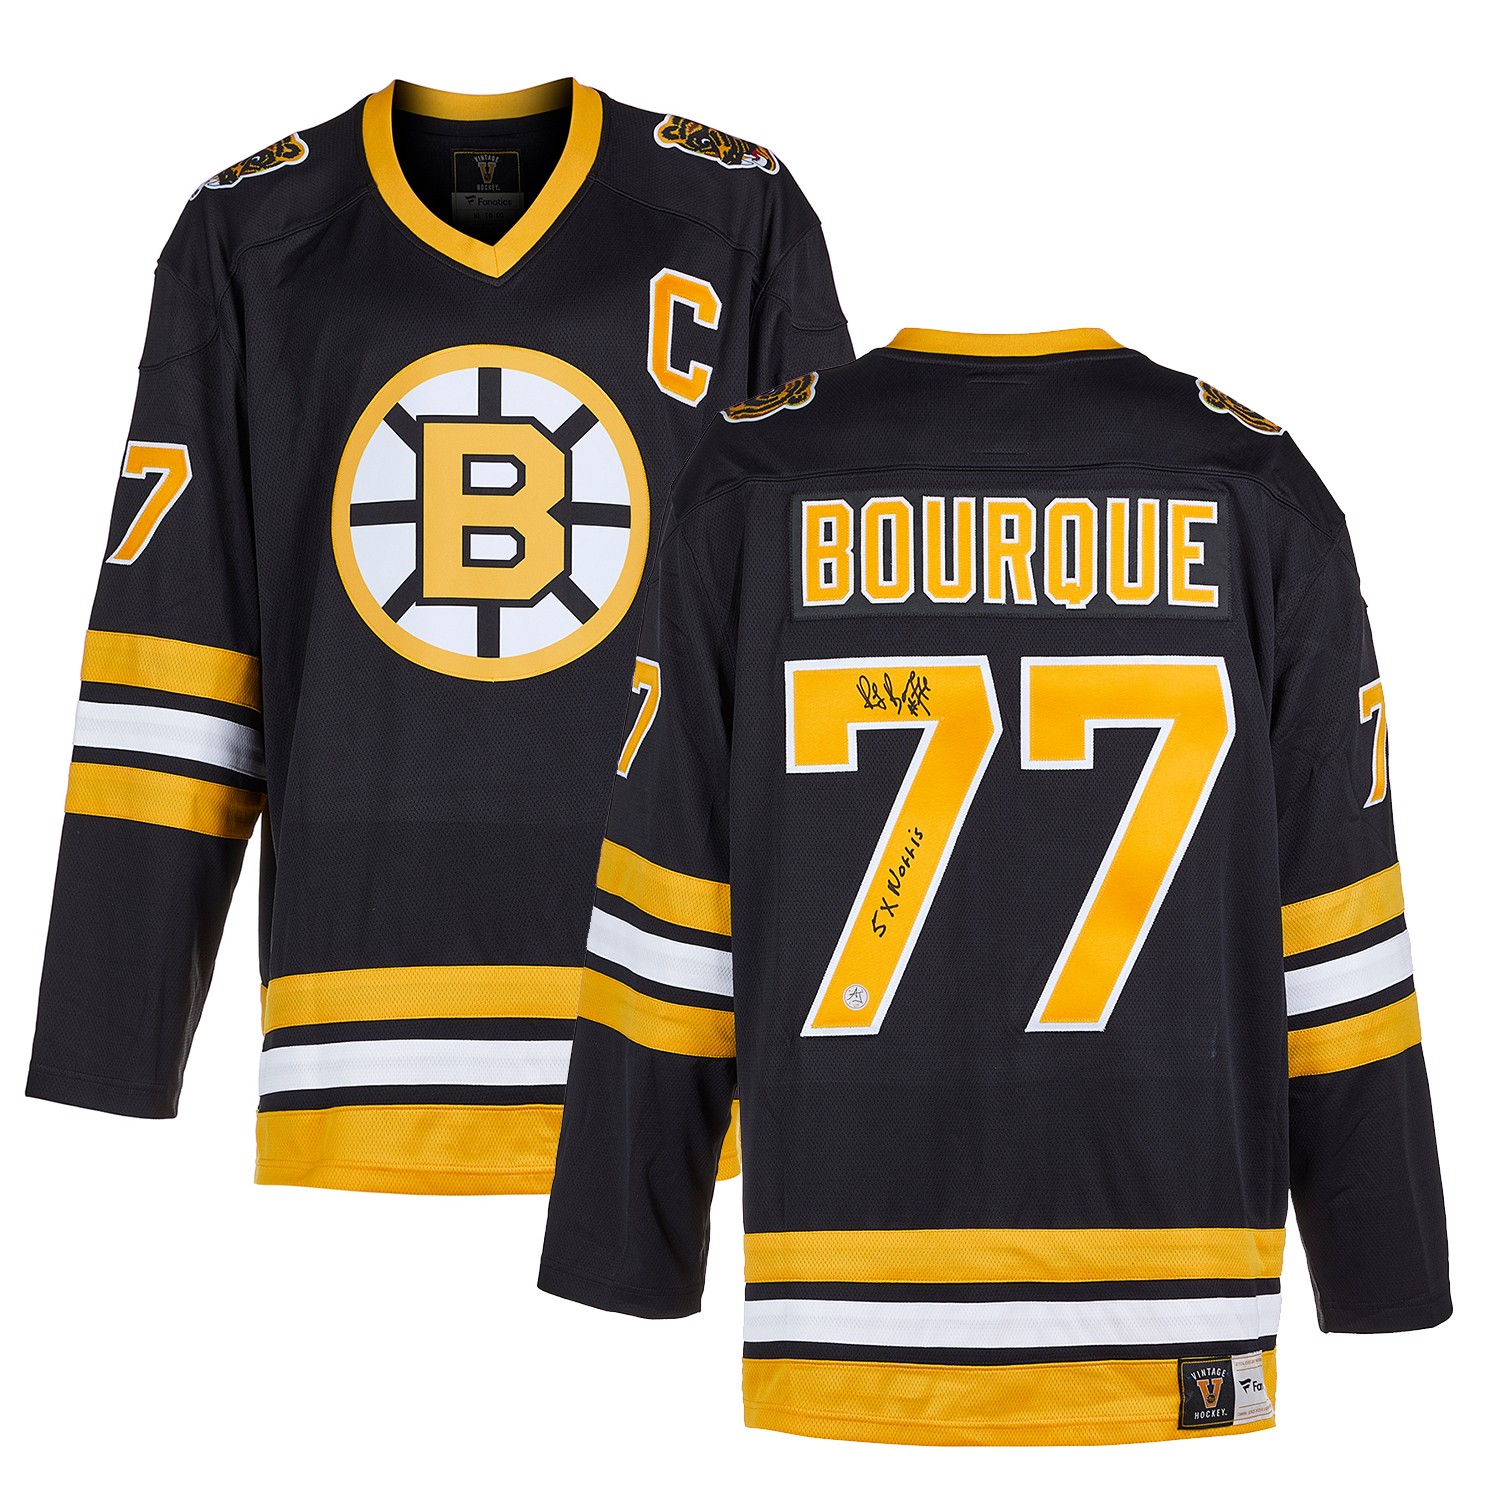 Ray Bourque Autographed Boston Bruins Fanatics Hockey Jersey - Fanatics